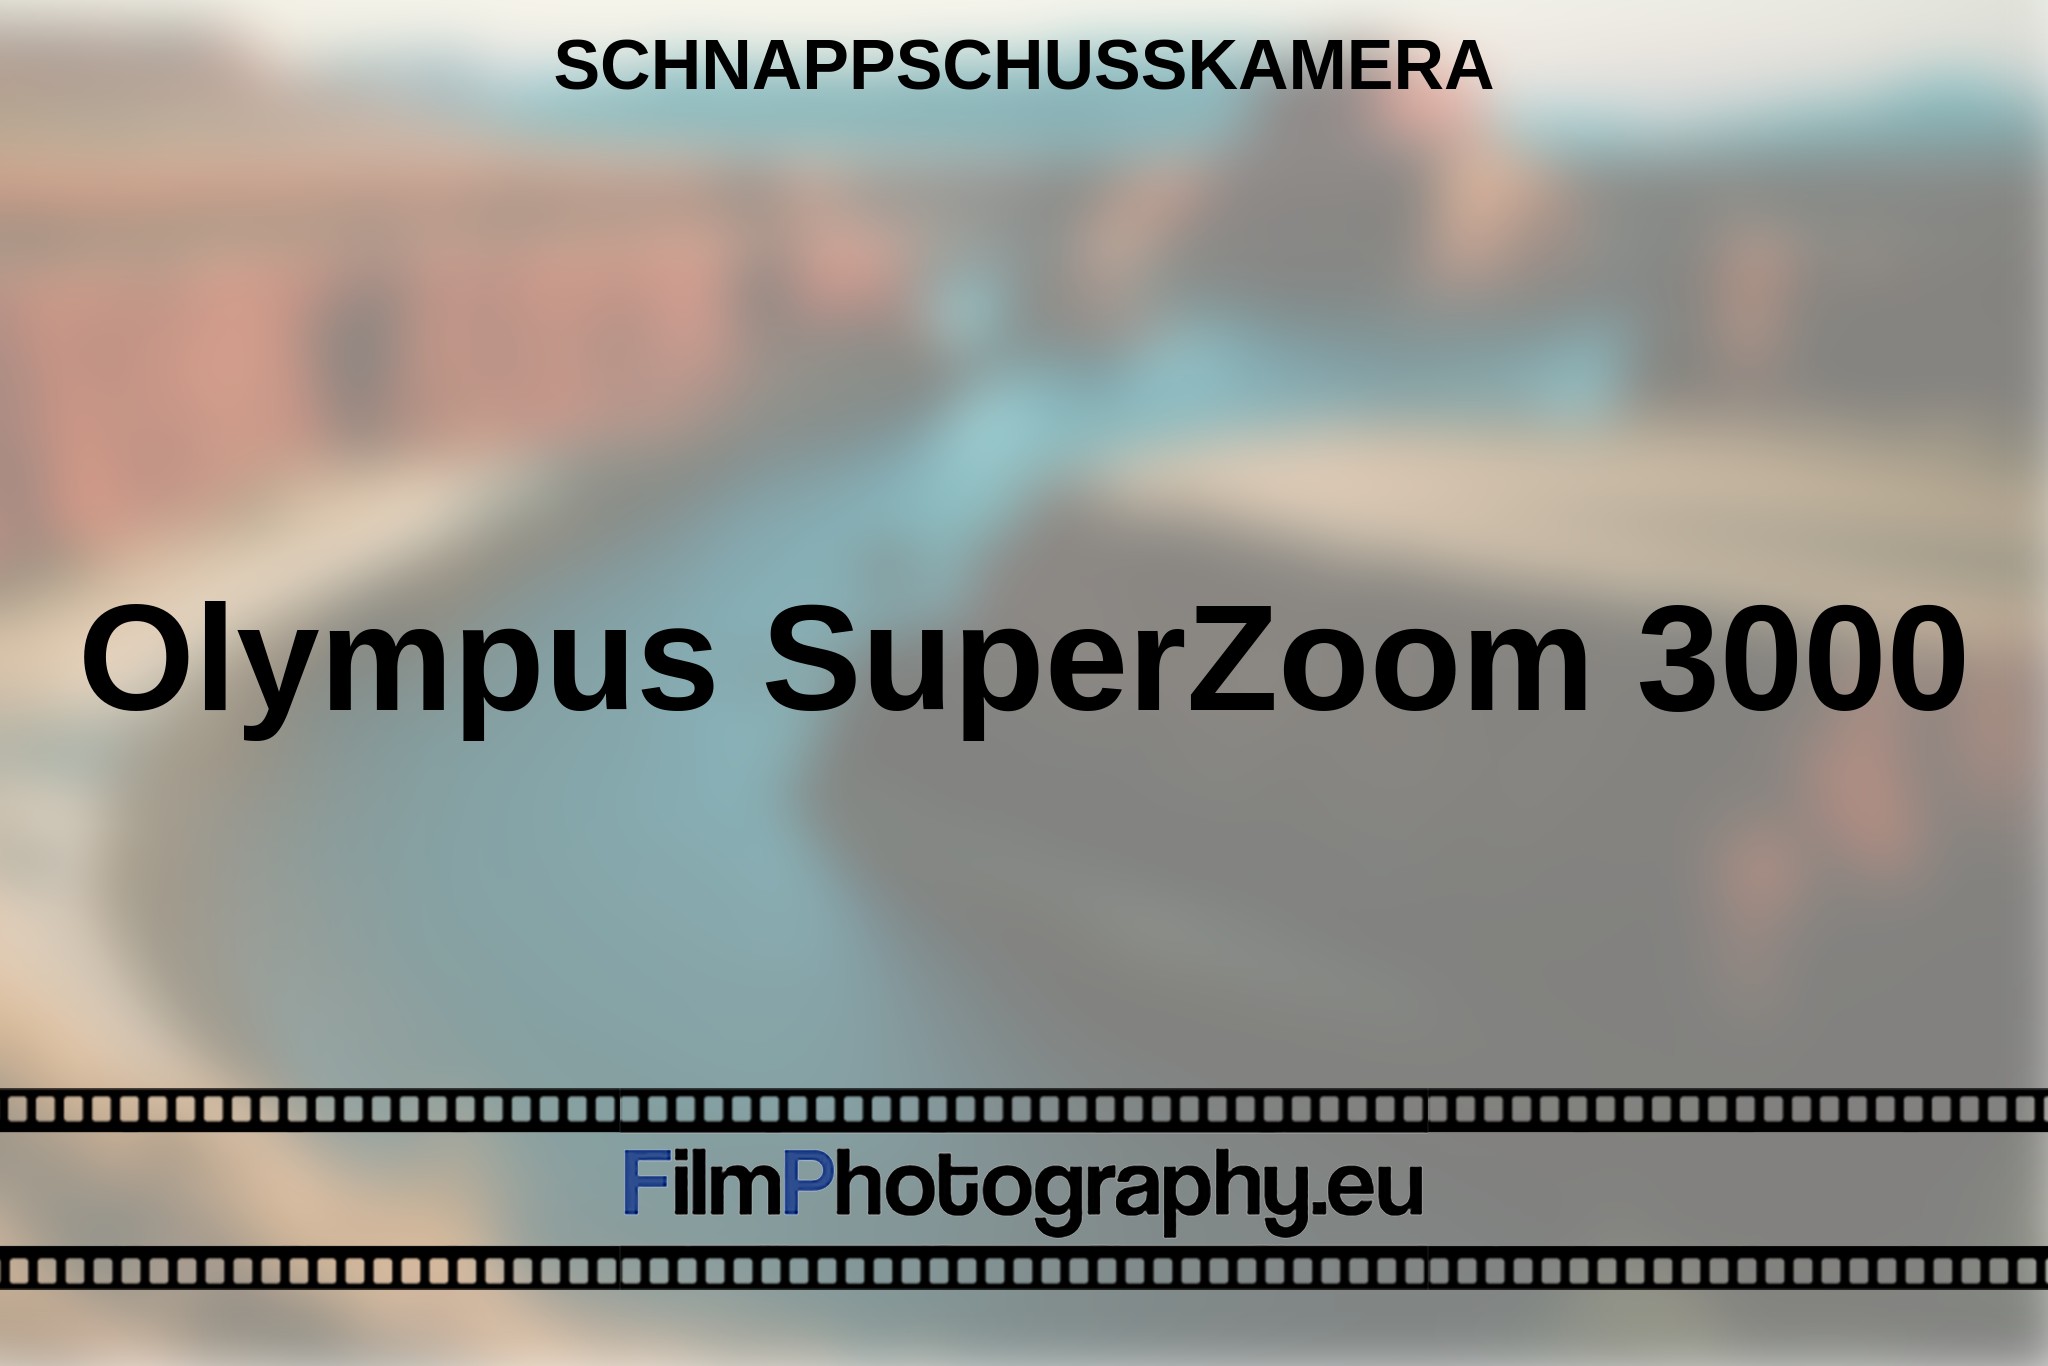 olympus-superzoom-3000-schnappschusskamera-bnv.jpg